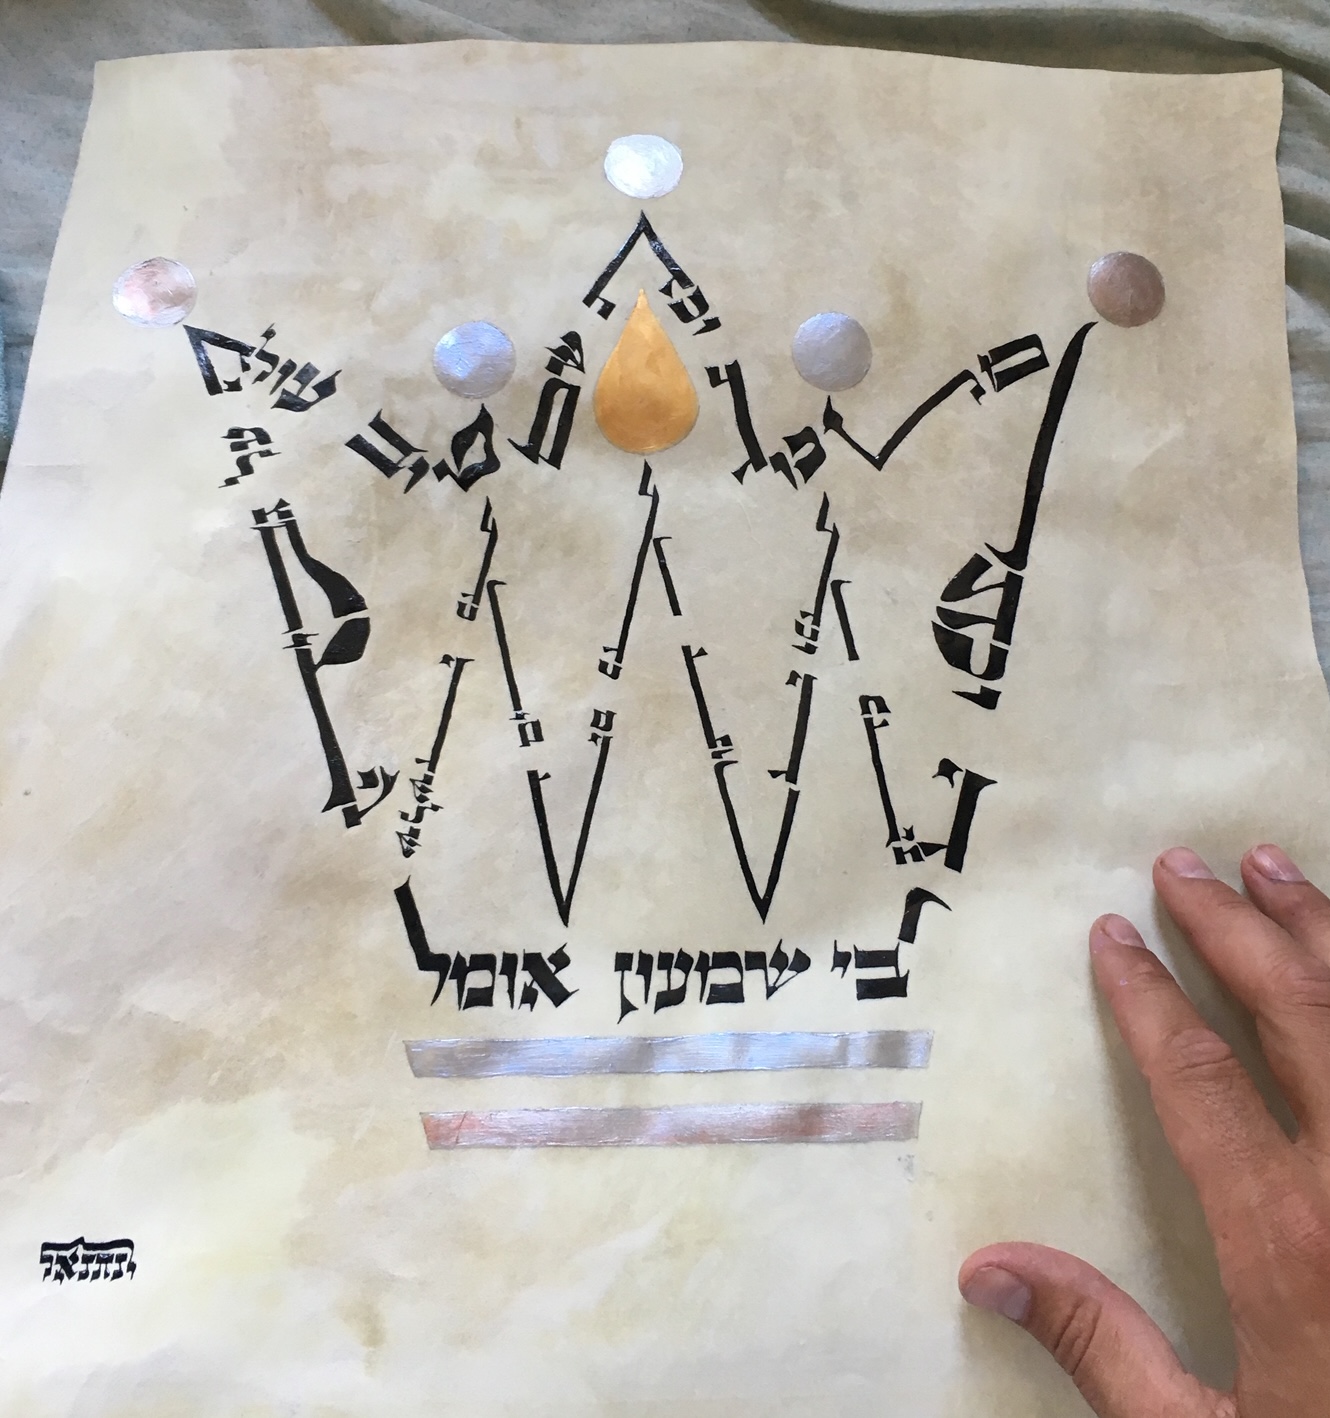 Pirket Avot Handwritten Judaica Scribal Art